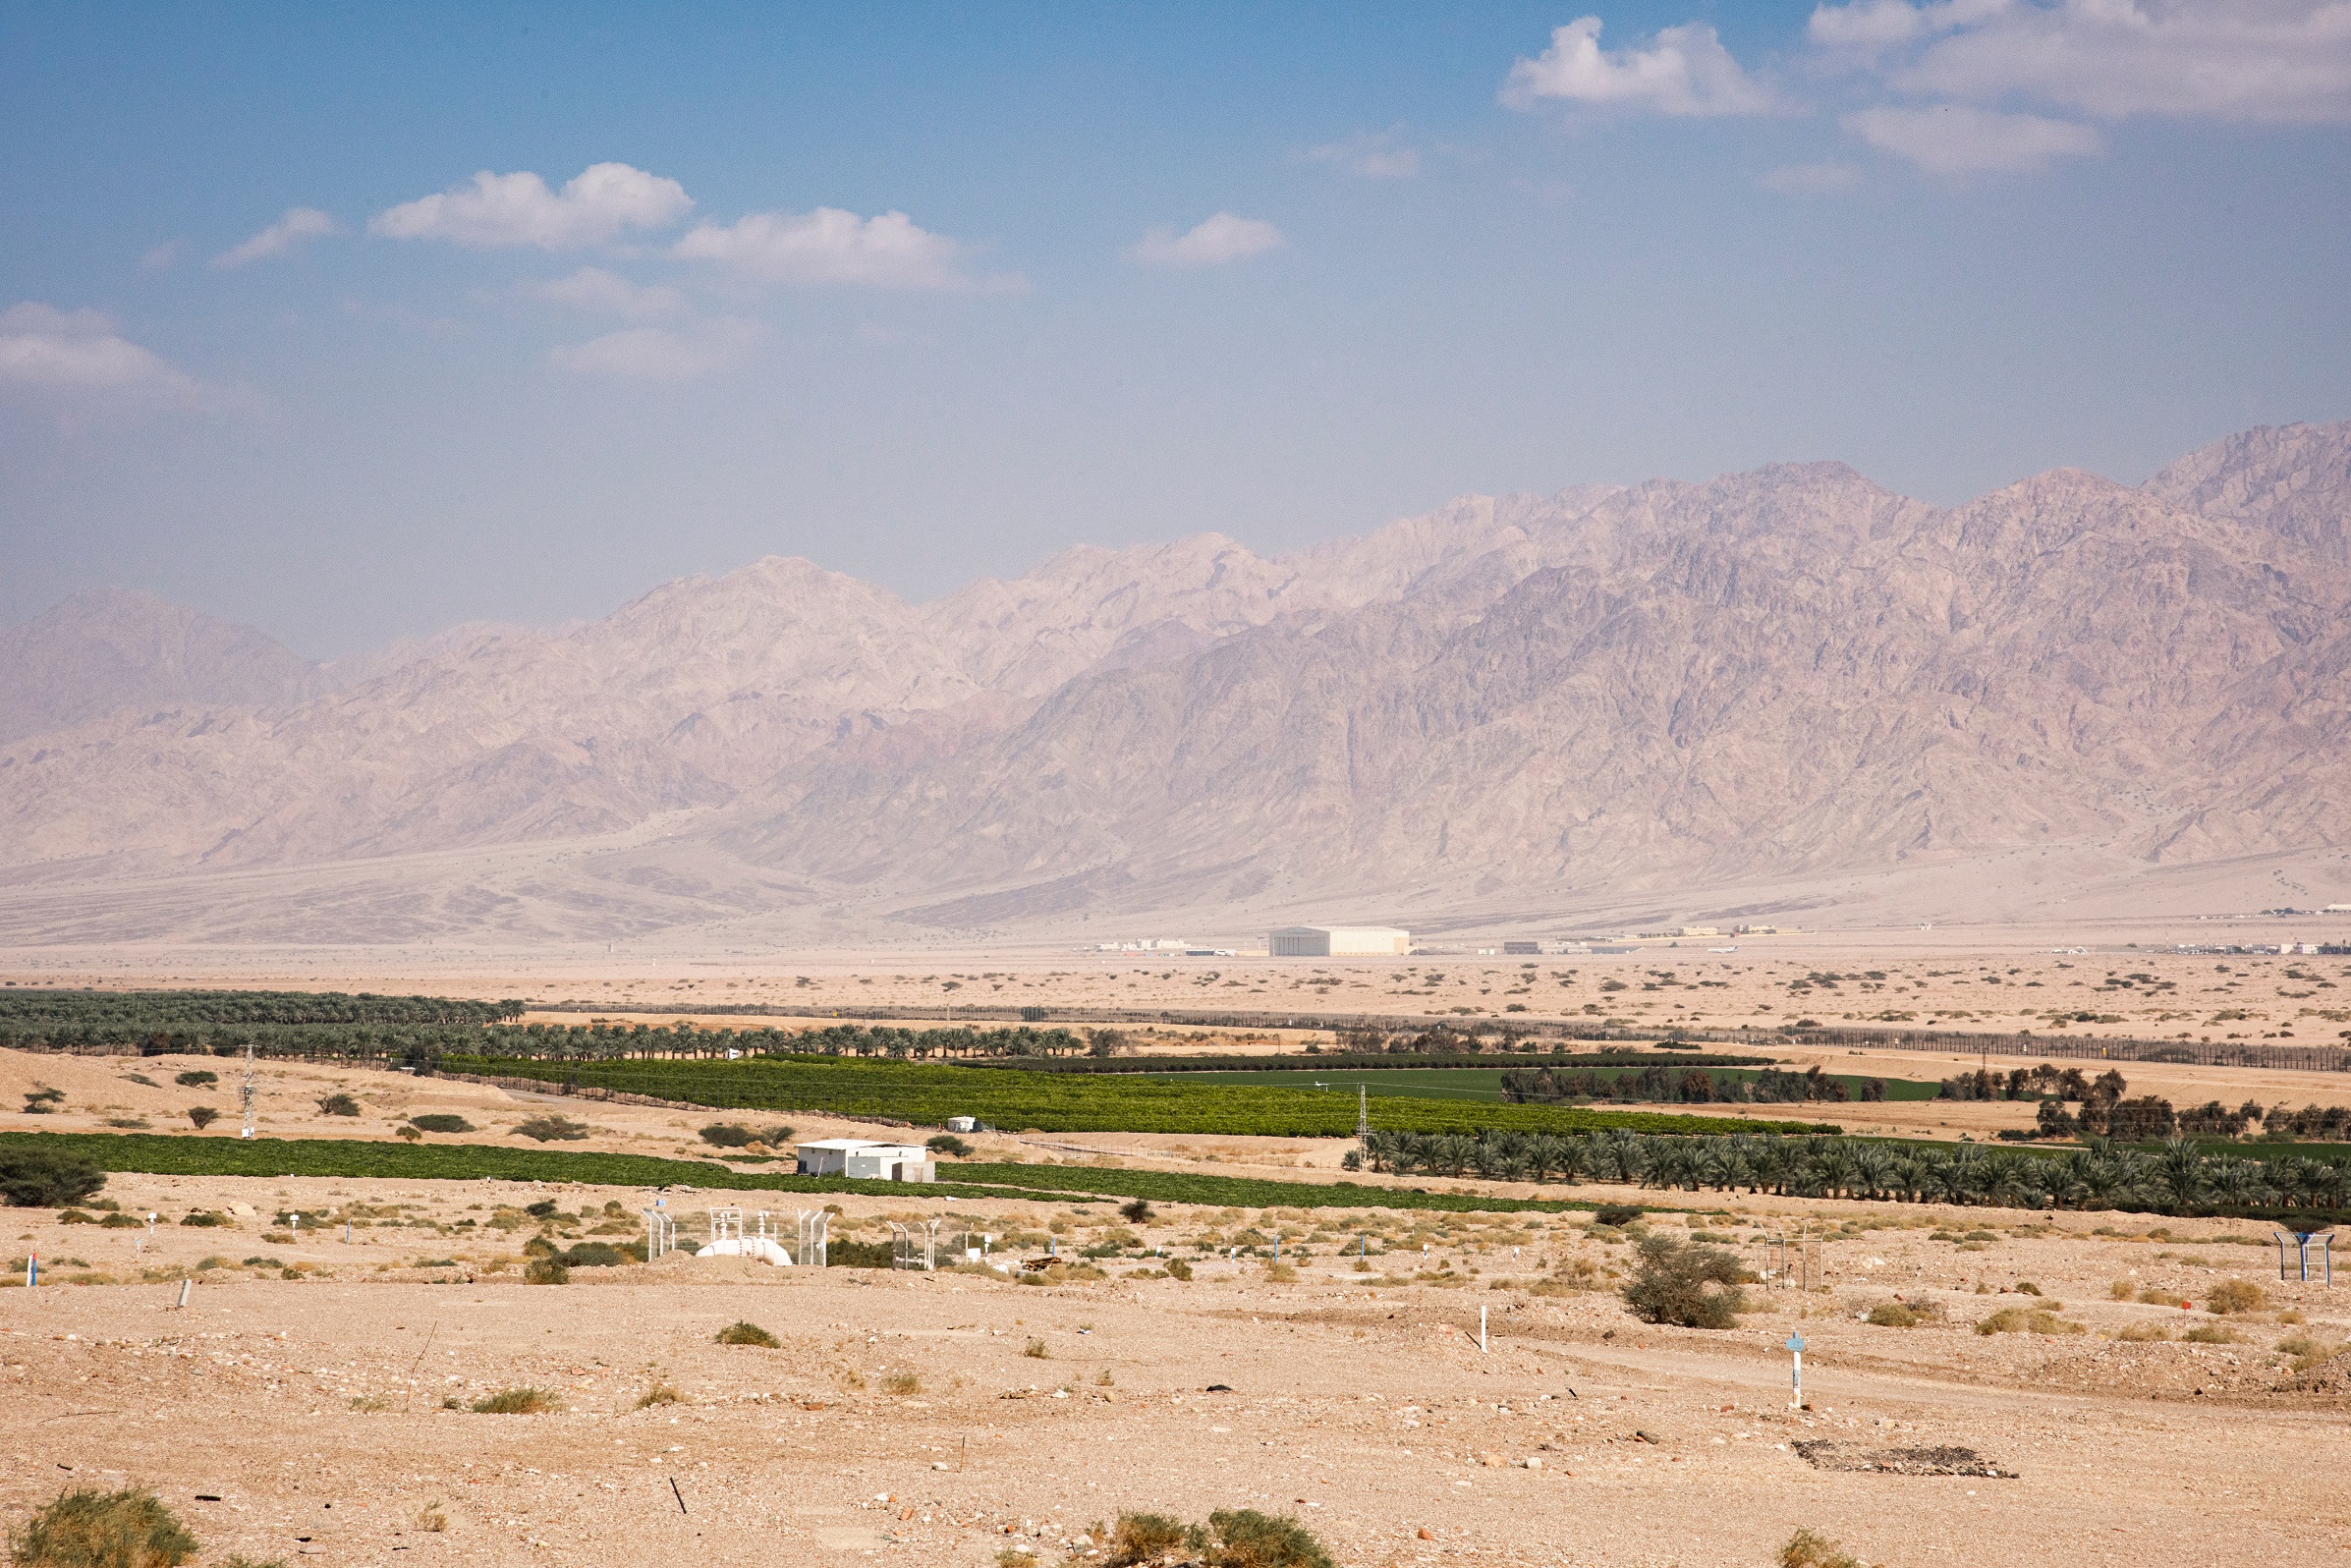 منطقة حدودية بين الأردن وفلسطين المحتلة وفي الخلفية تظهر جبال العقبة. (shutterstock)